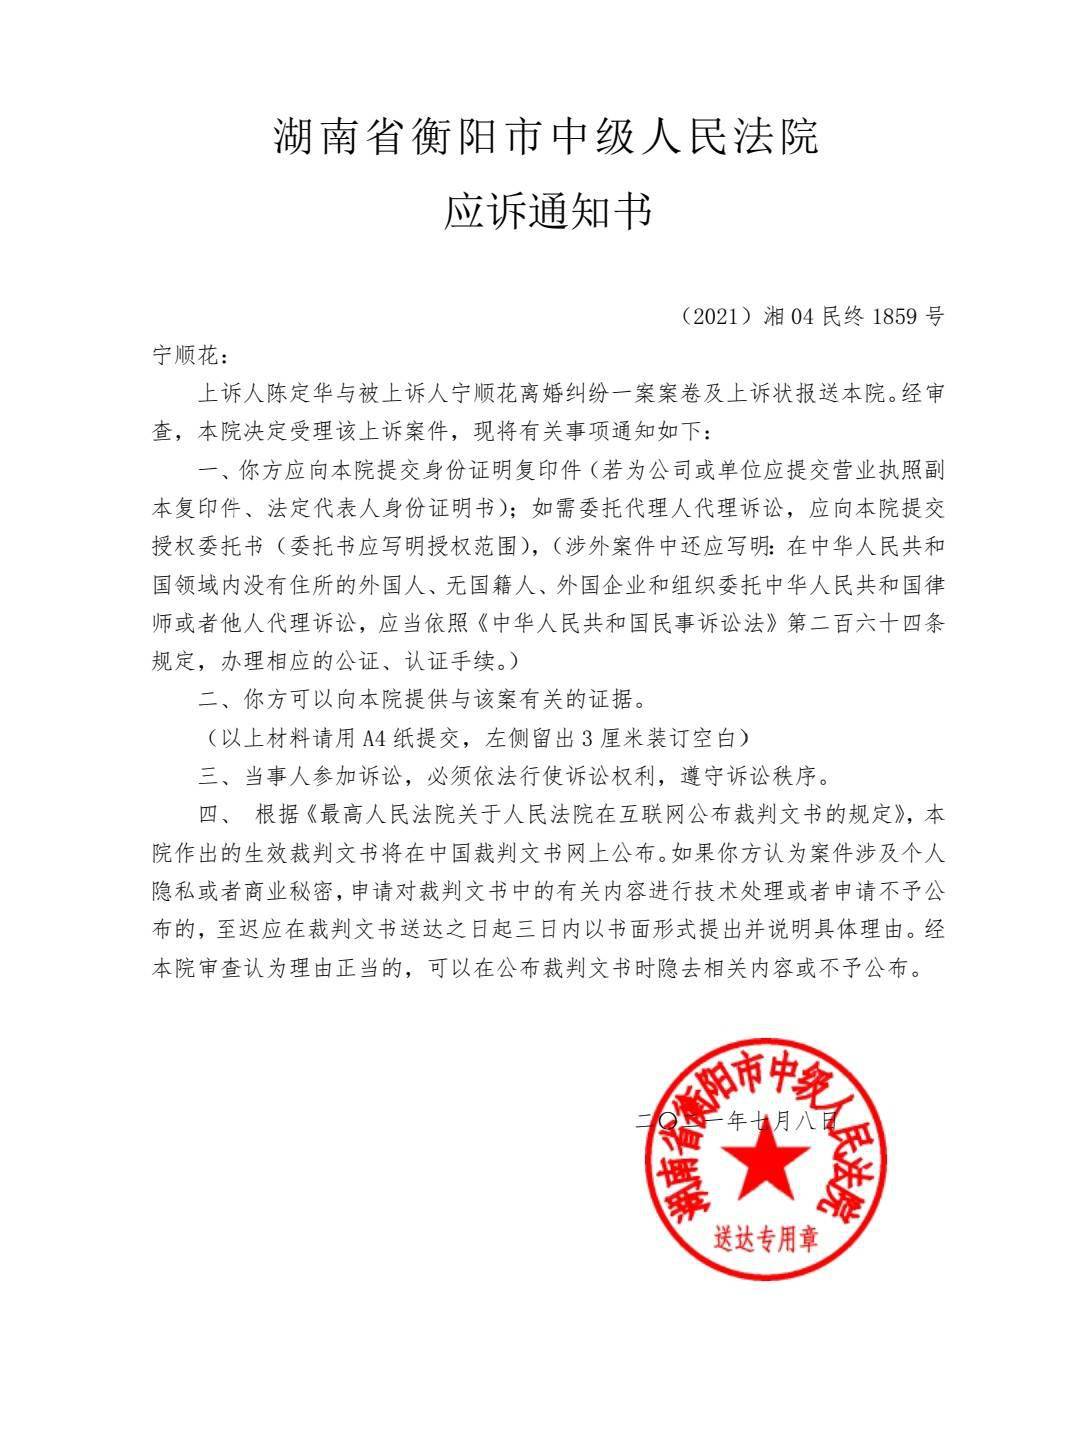 7月8日,衡阳市中级法院向宁顺花发出应诉通知书及传票